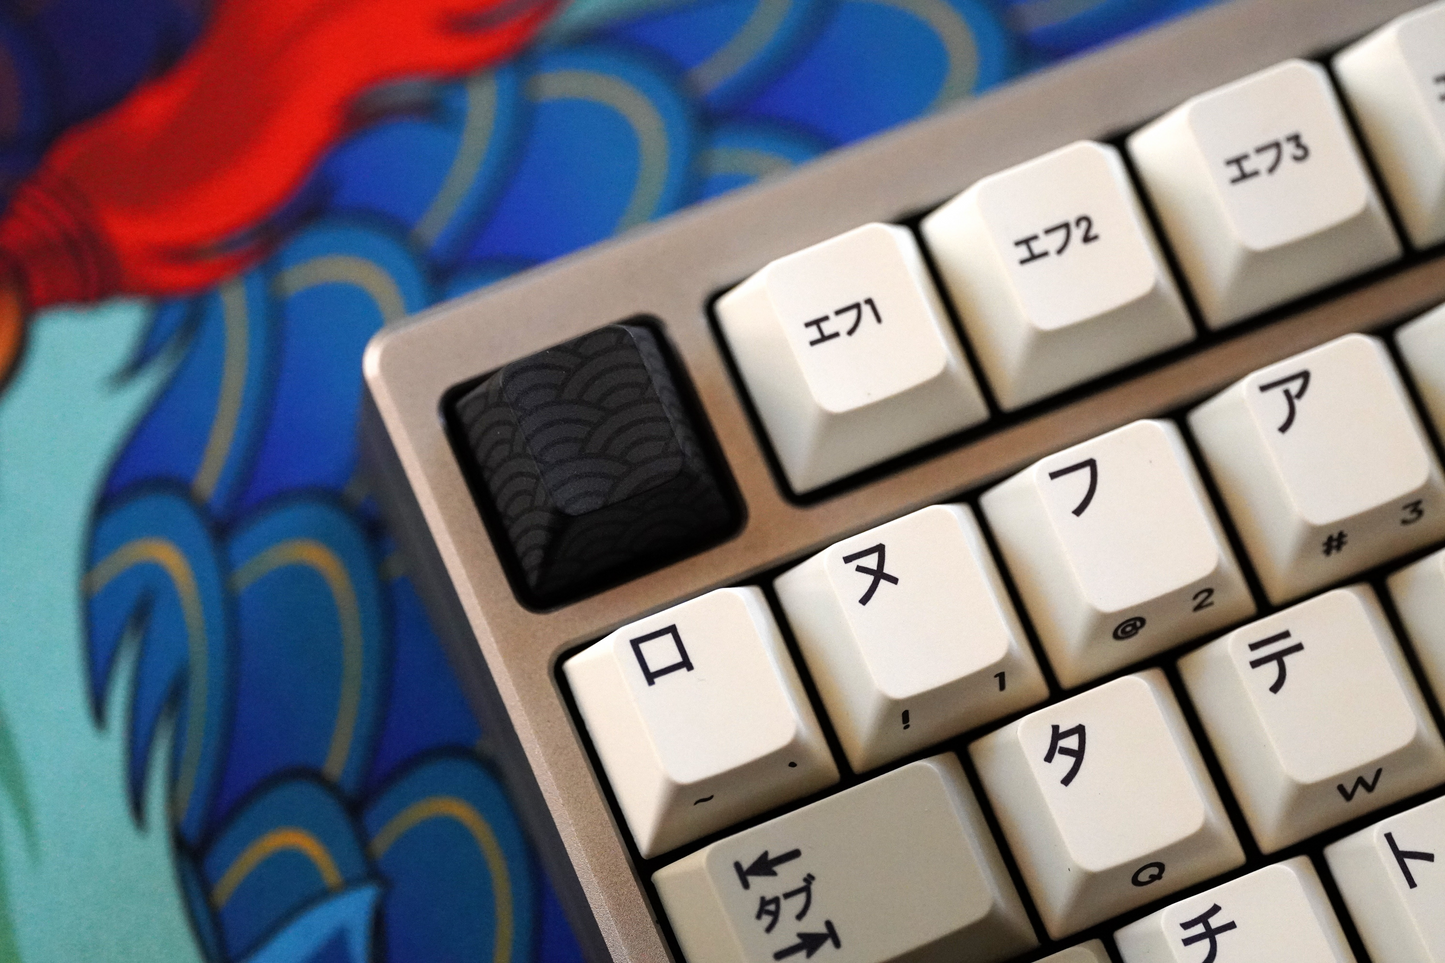 Kanamoji Keycaps